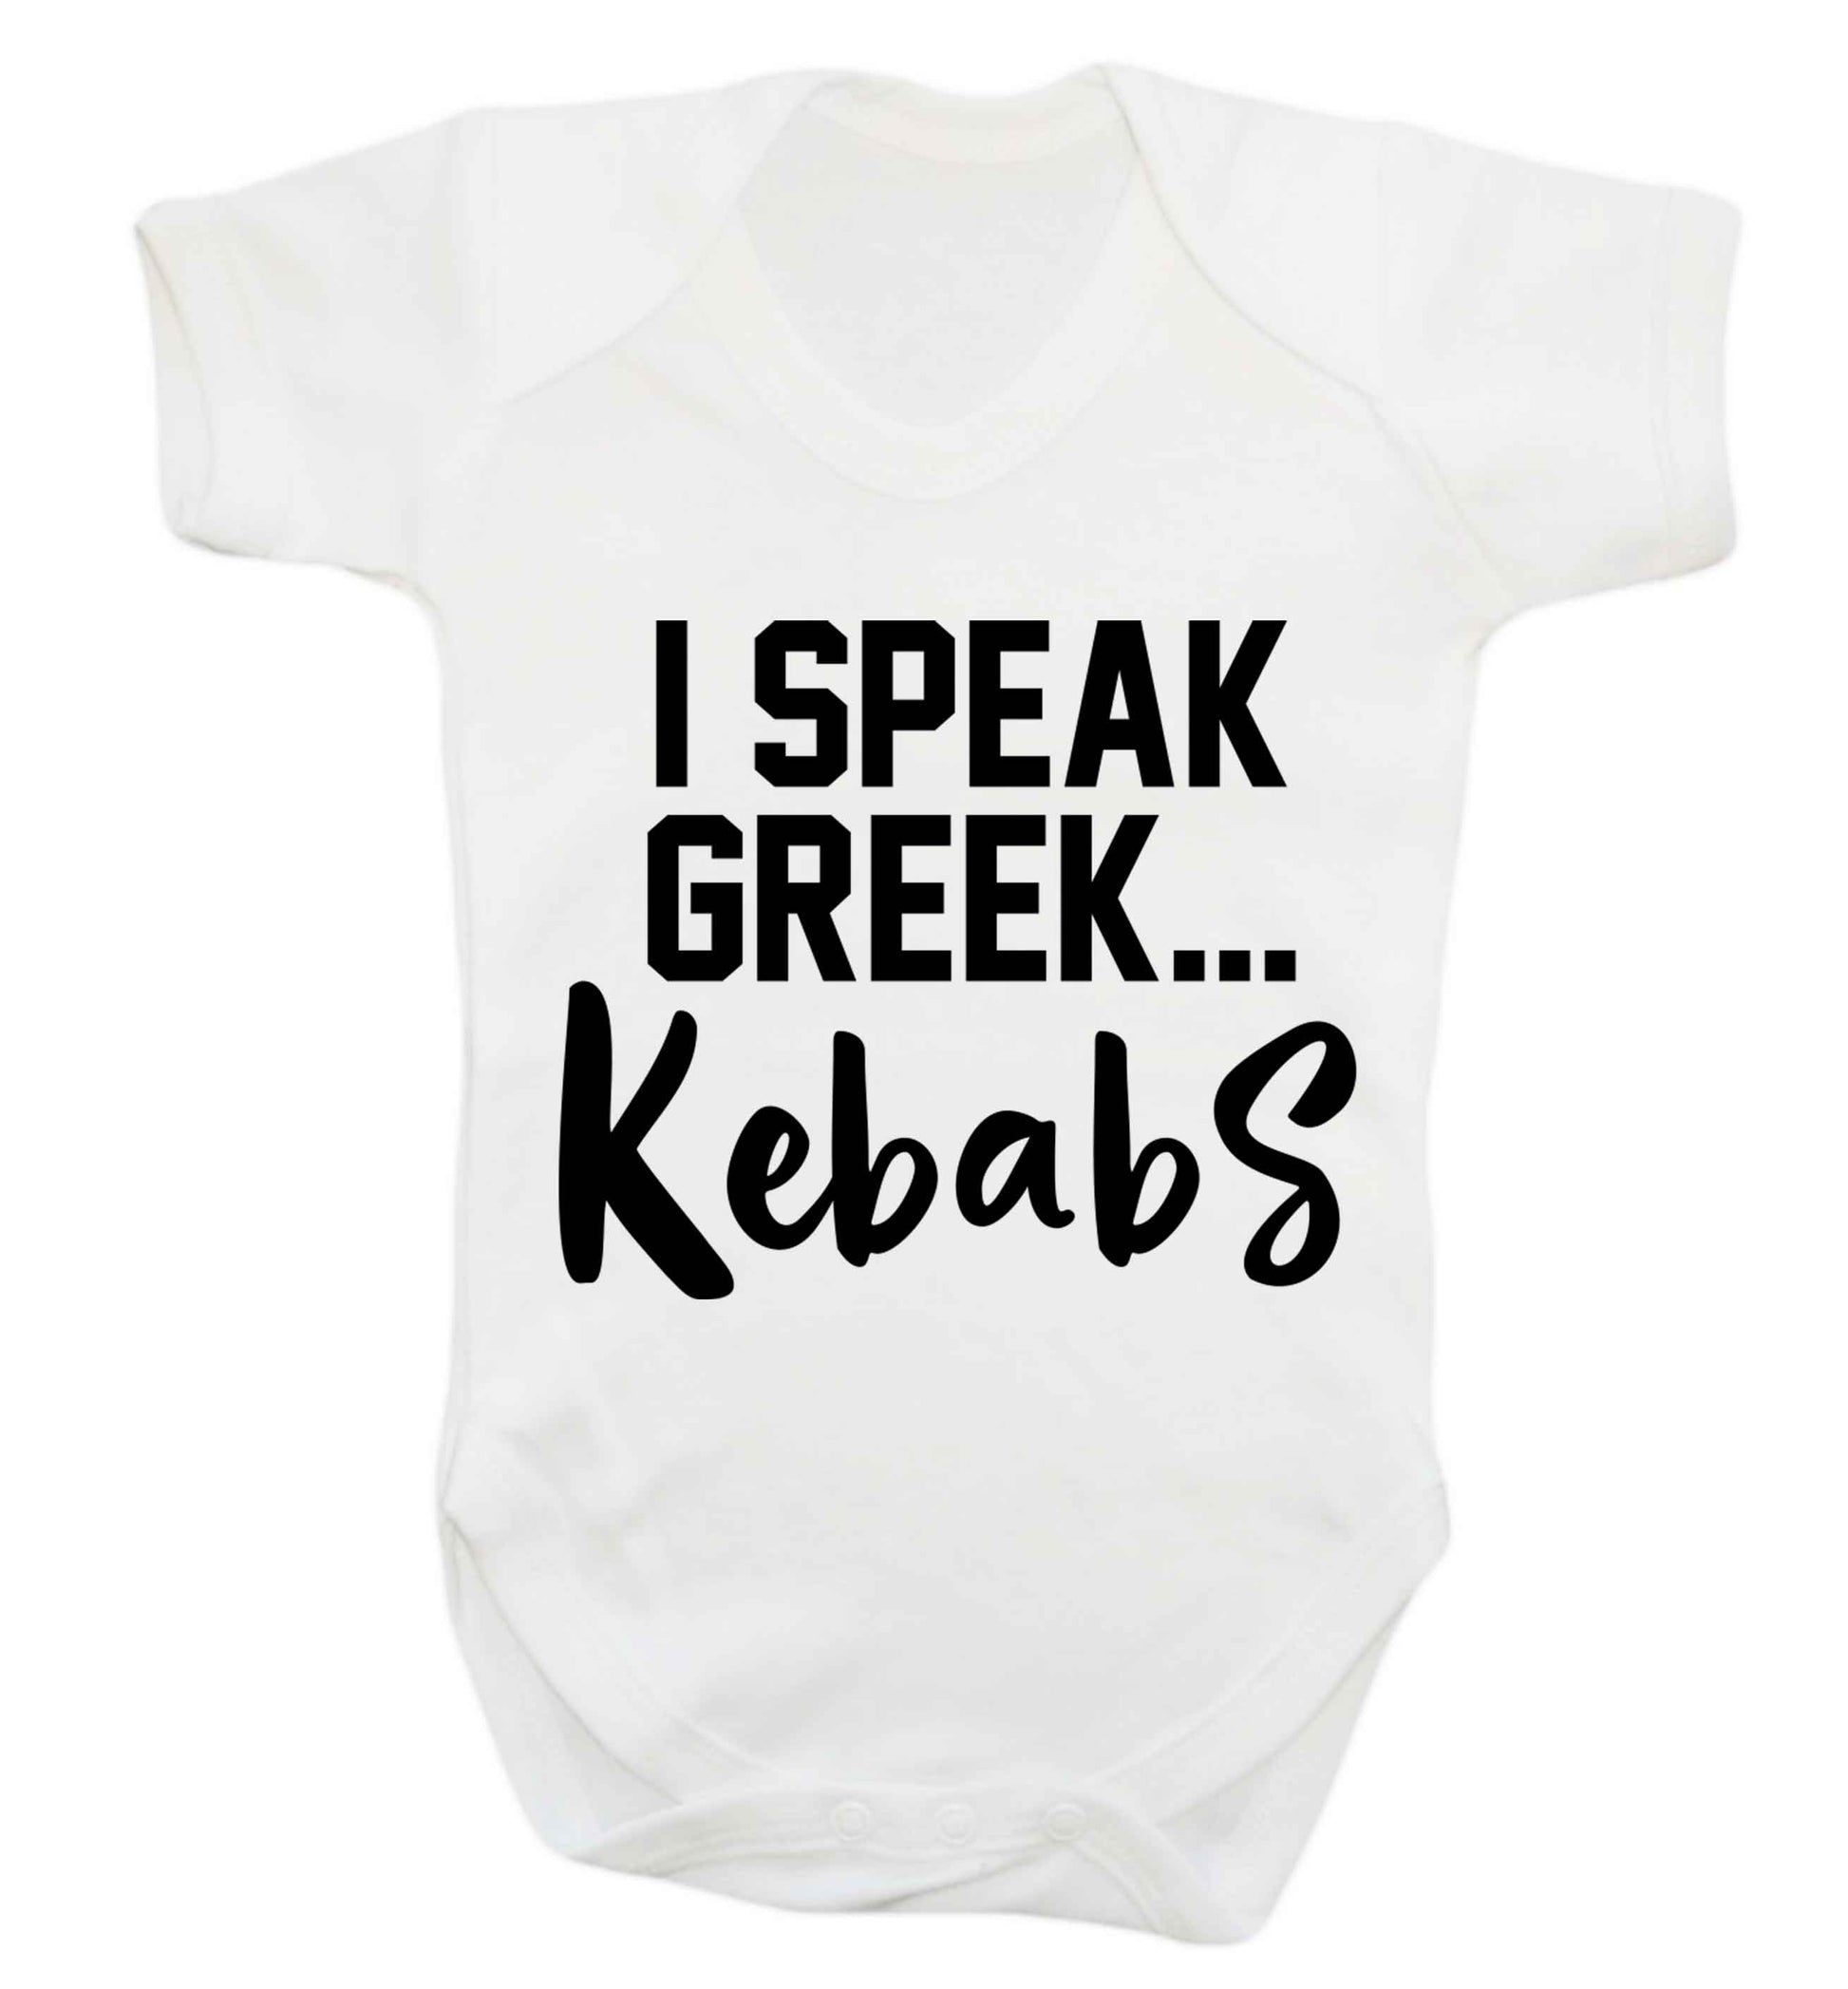 I speak Greek...kebabs Baby Vest white 18-24 months